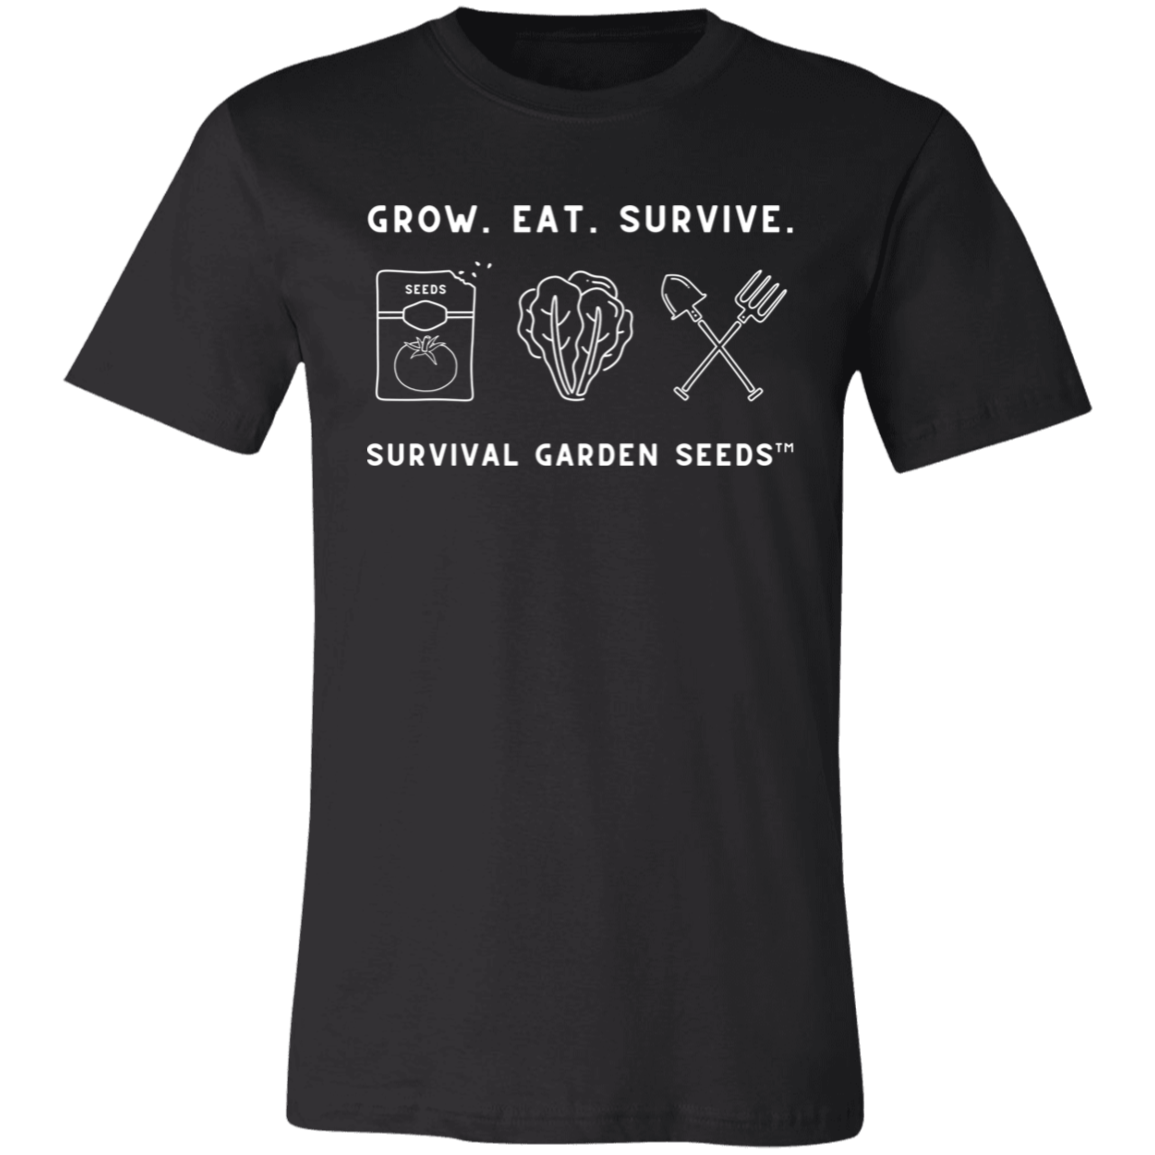 Short-Sleeve T-Shirt - Grow. Eat. Survive.